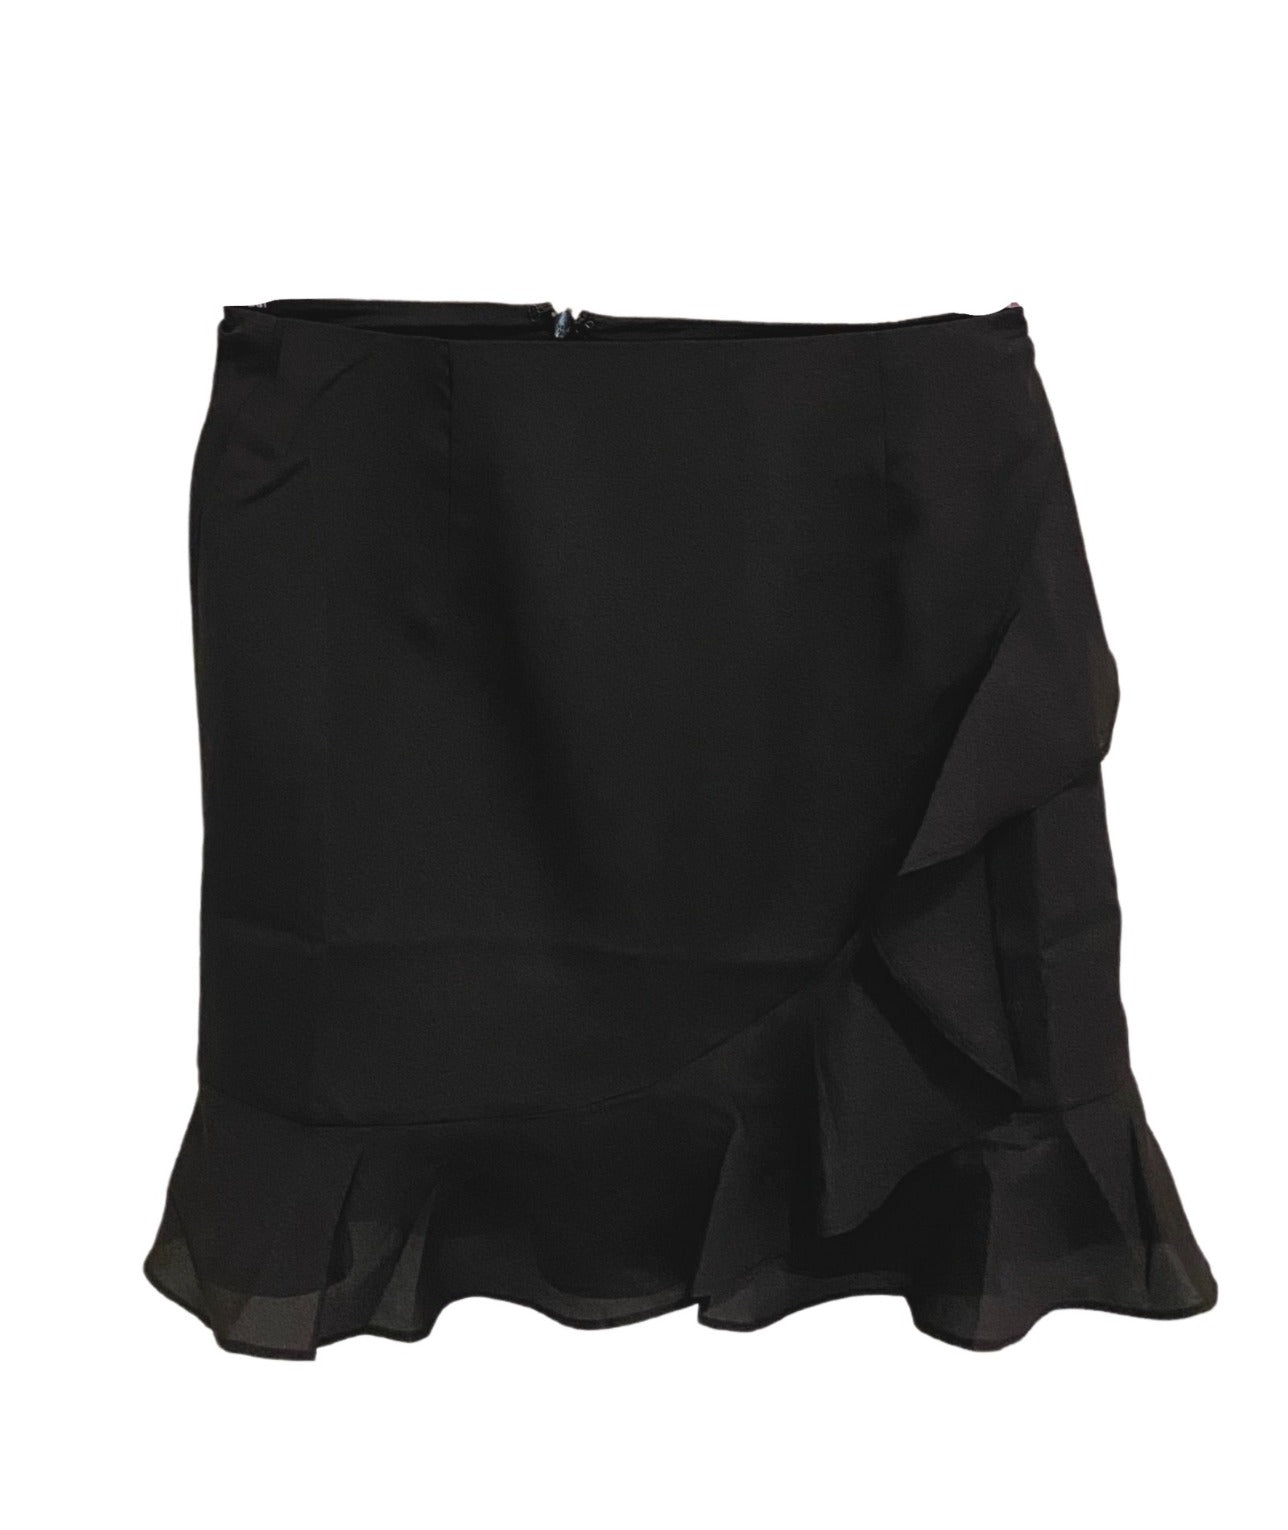 The Serena Classic Ruffle Skirt